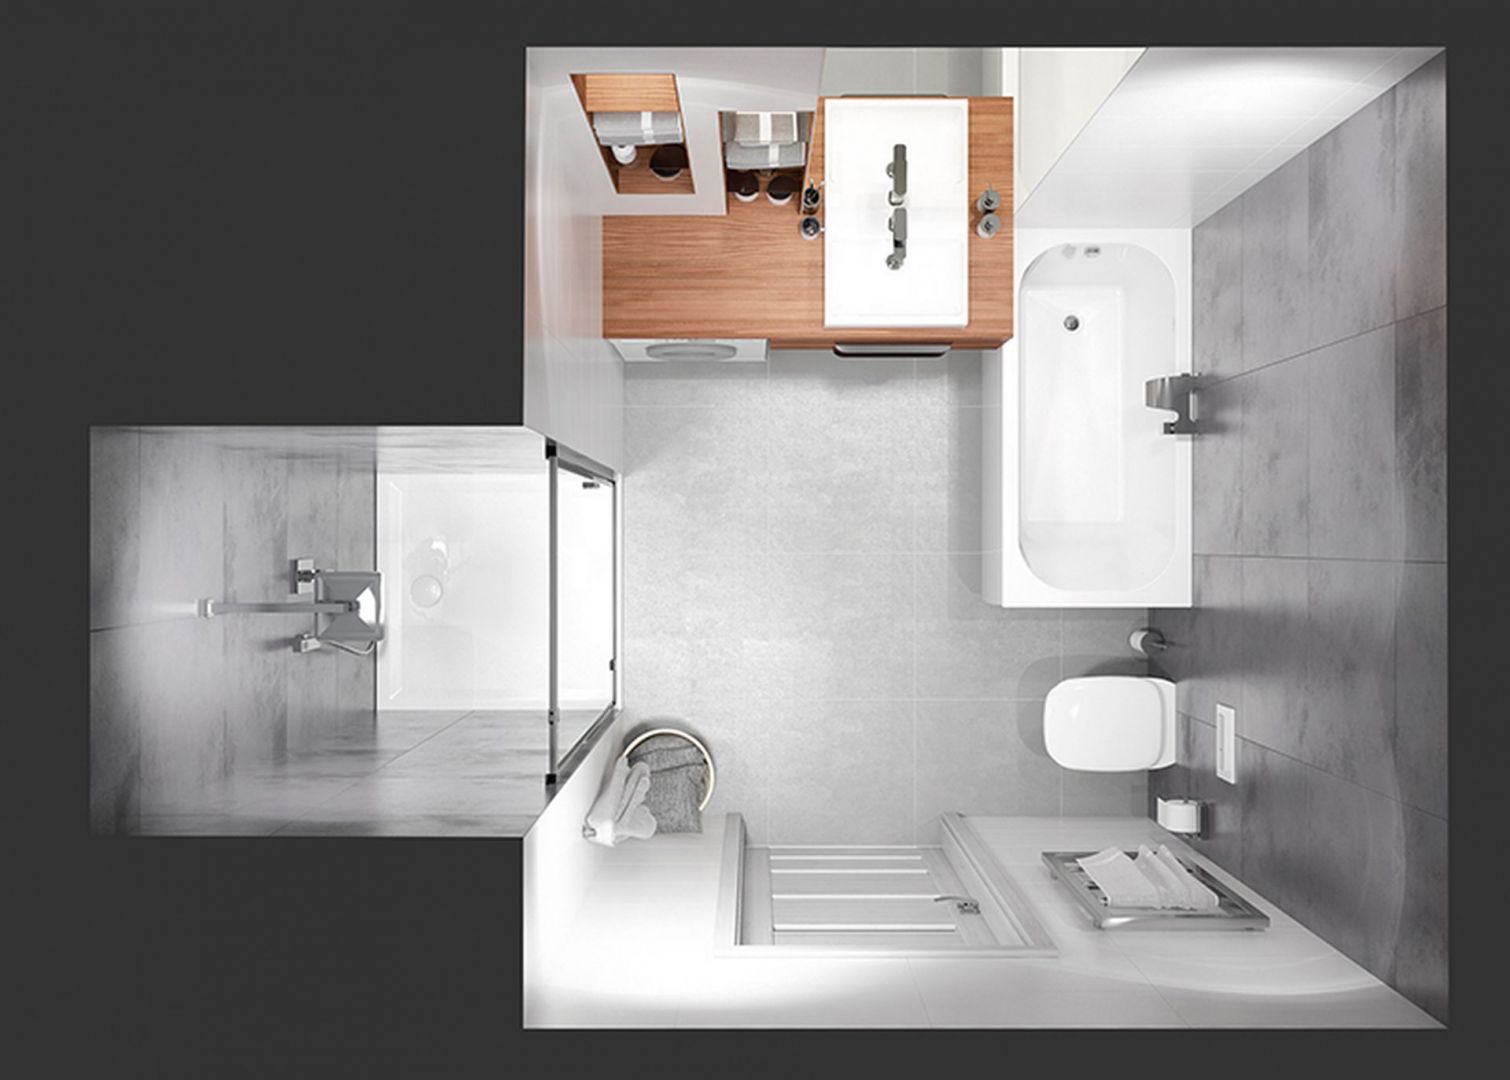 Propozycja aranżacji łazienki o metrażu 5 m2. Fot. Sanplast